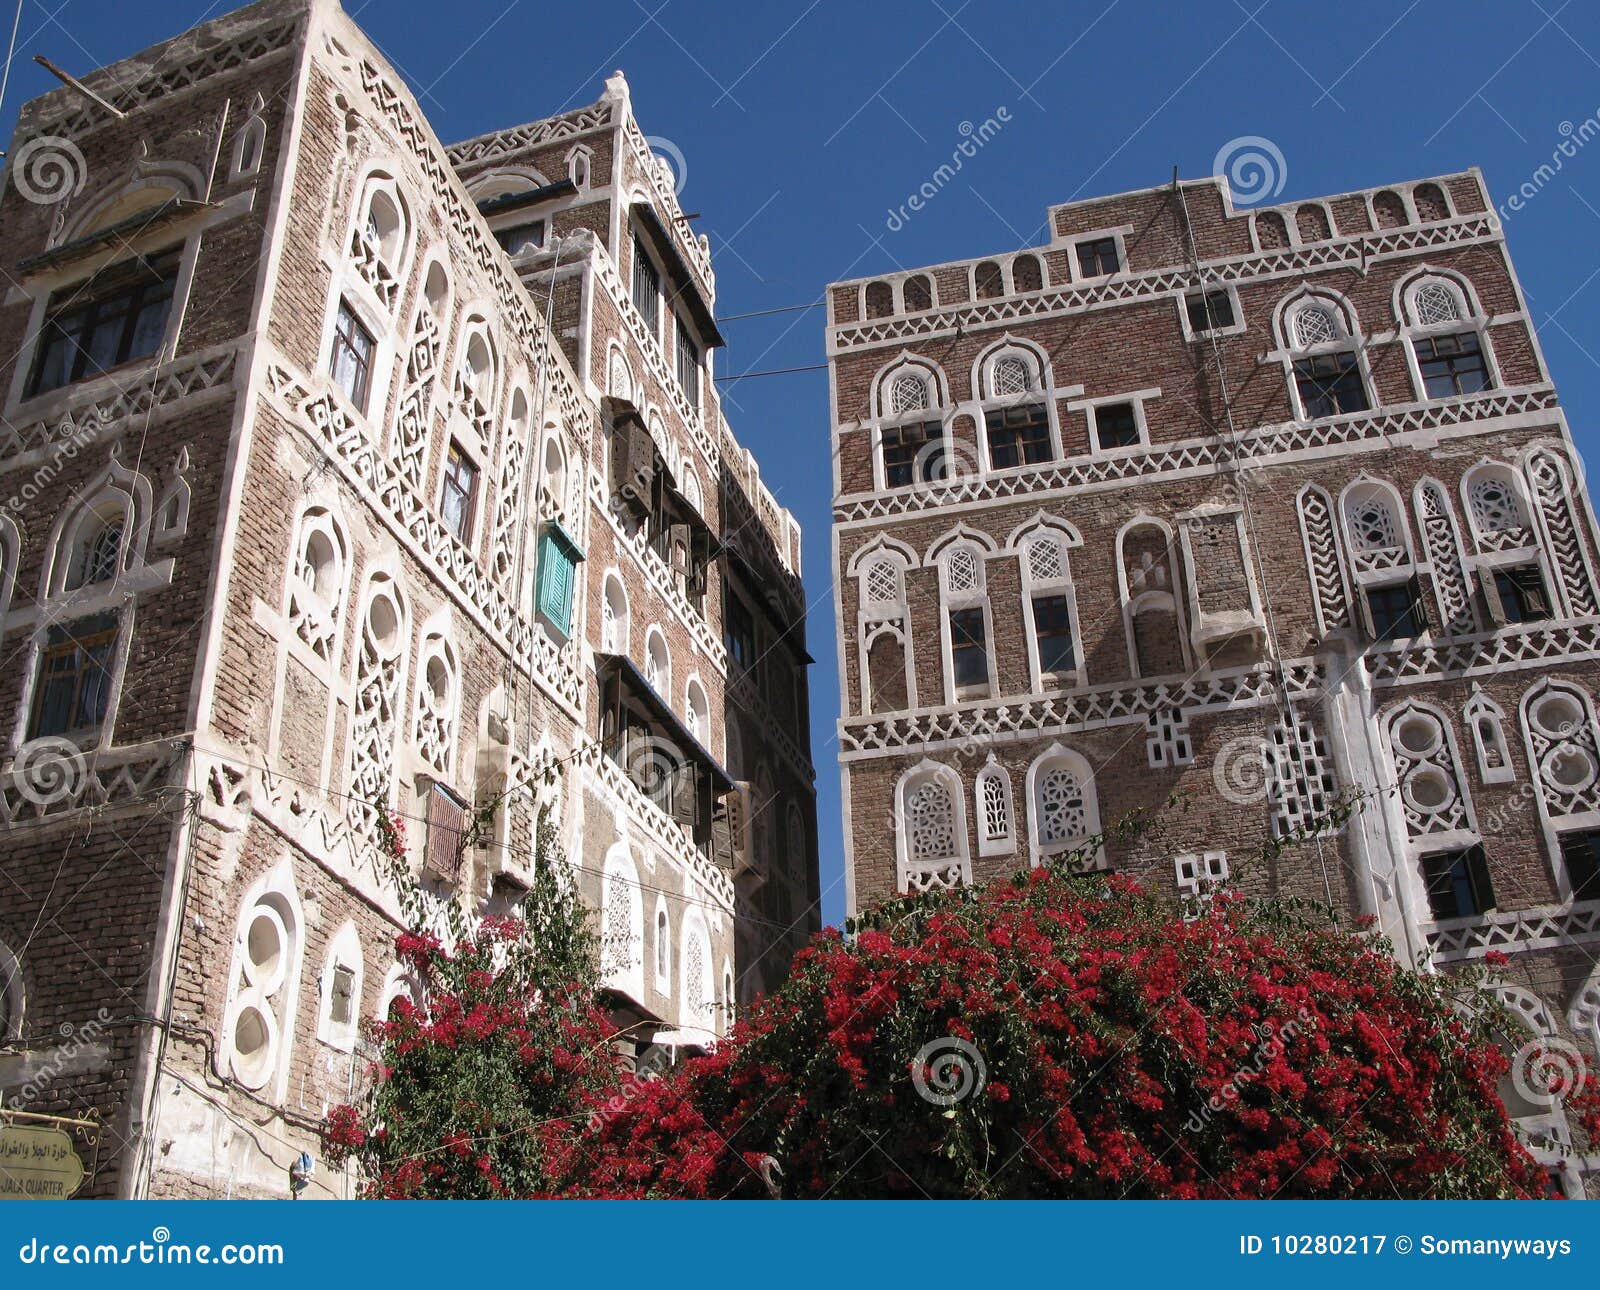 old city of sana in yemen